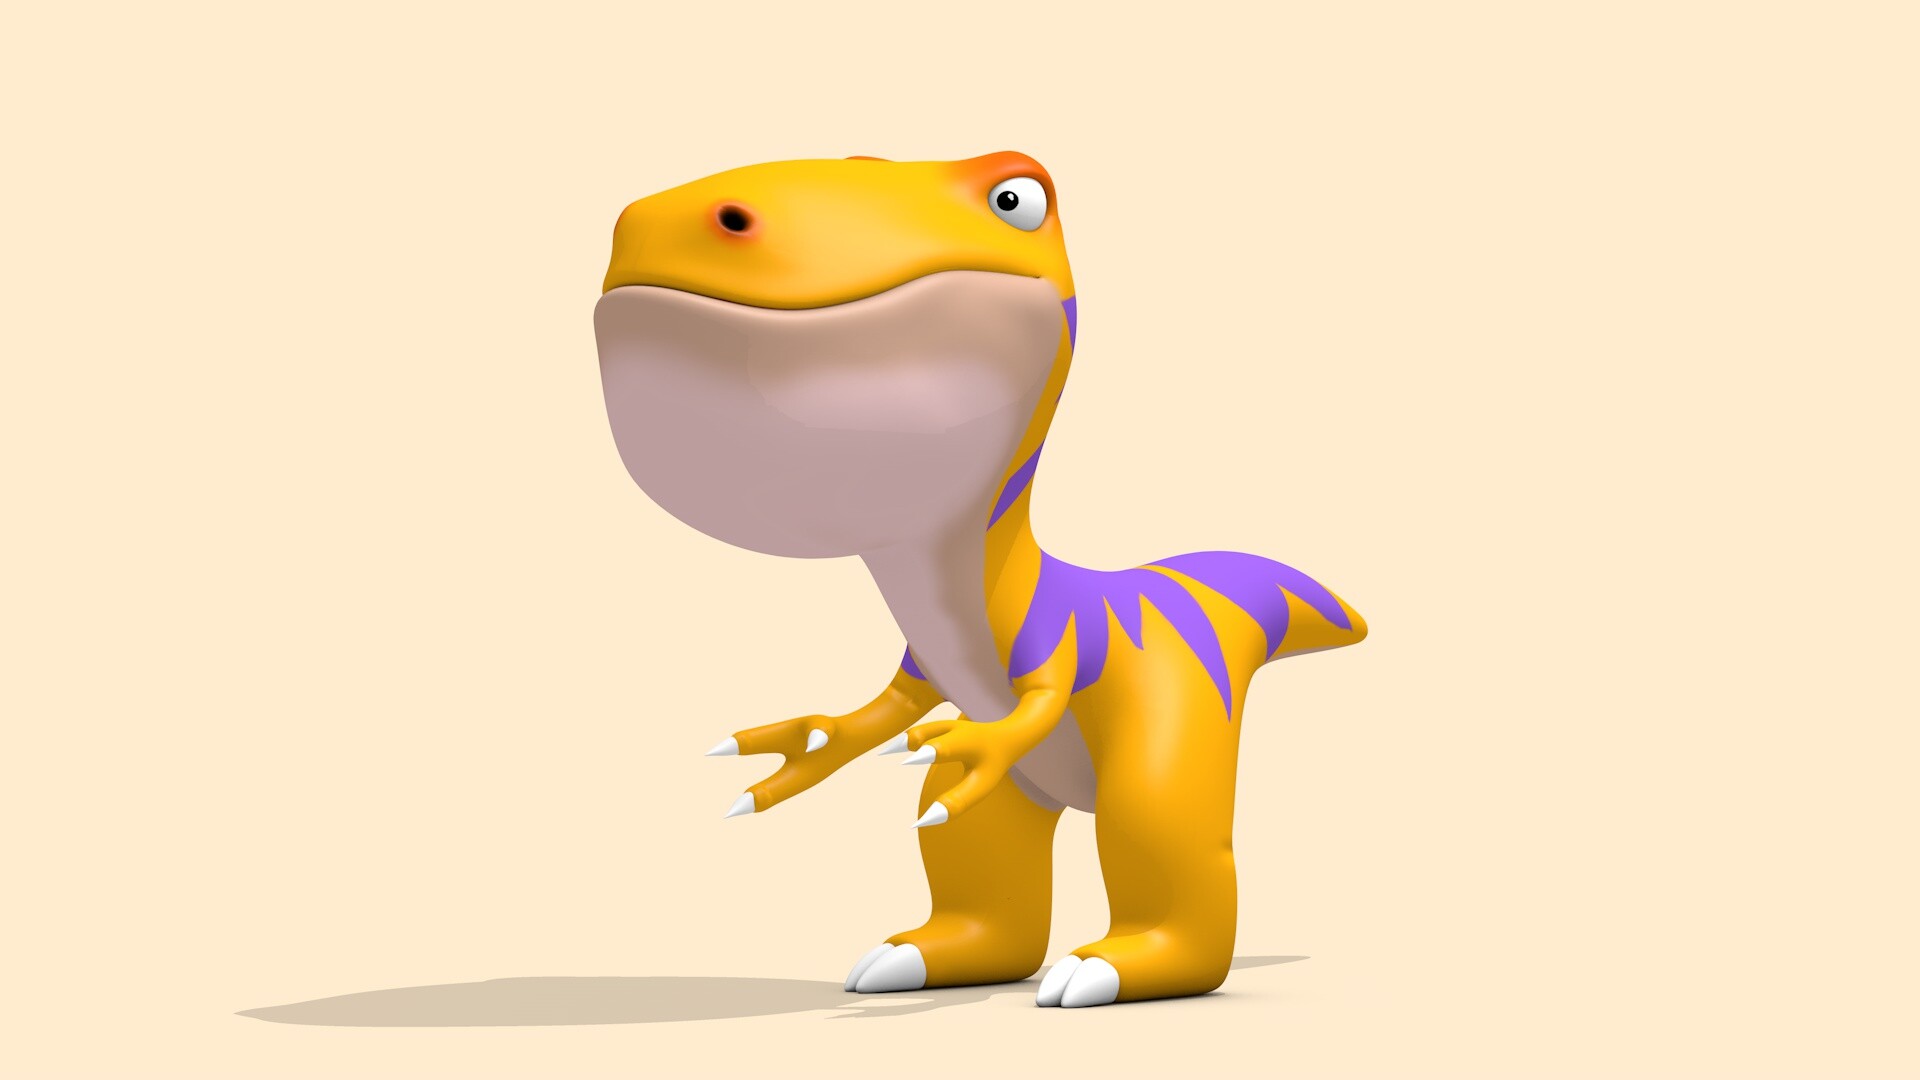 ArtStation - Cartoon Tyrannosaurus T-Rex Dinosaur